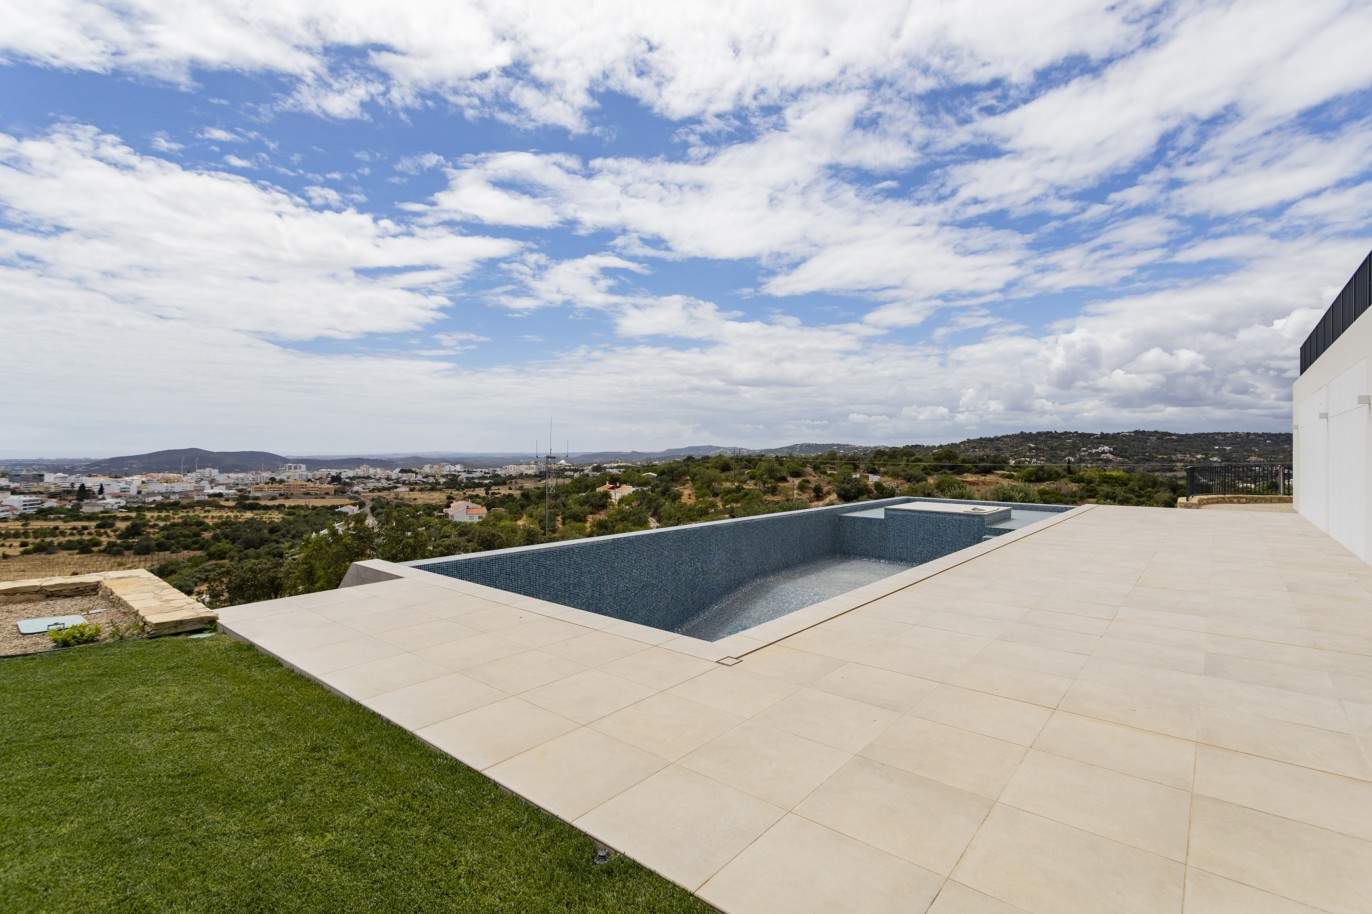 Villa de 4 dormitorios con piscina, en venta en S.Clemente, Loulé, Algarve_201809